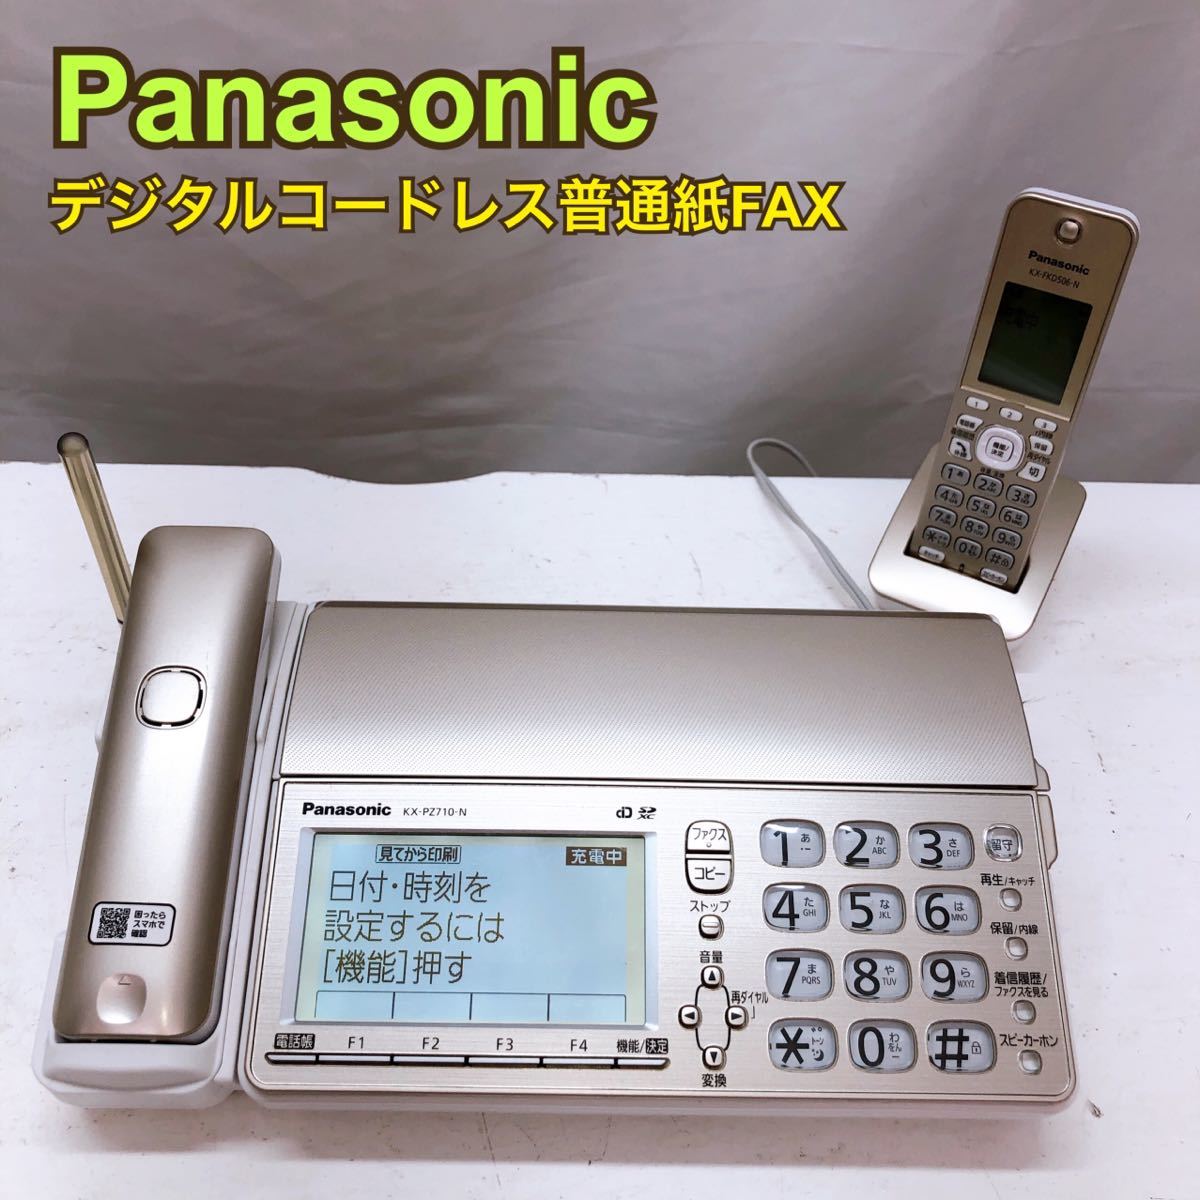 パナソニック パーソナルファクスFAX KX-PZ710-N ファックス